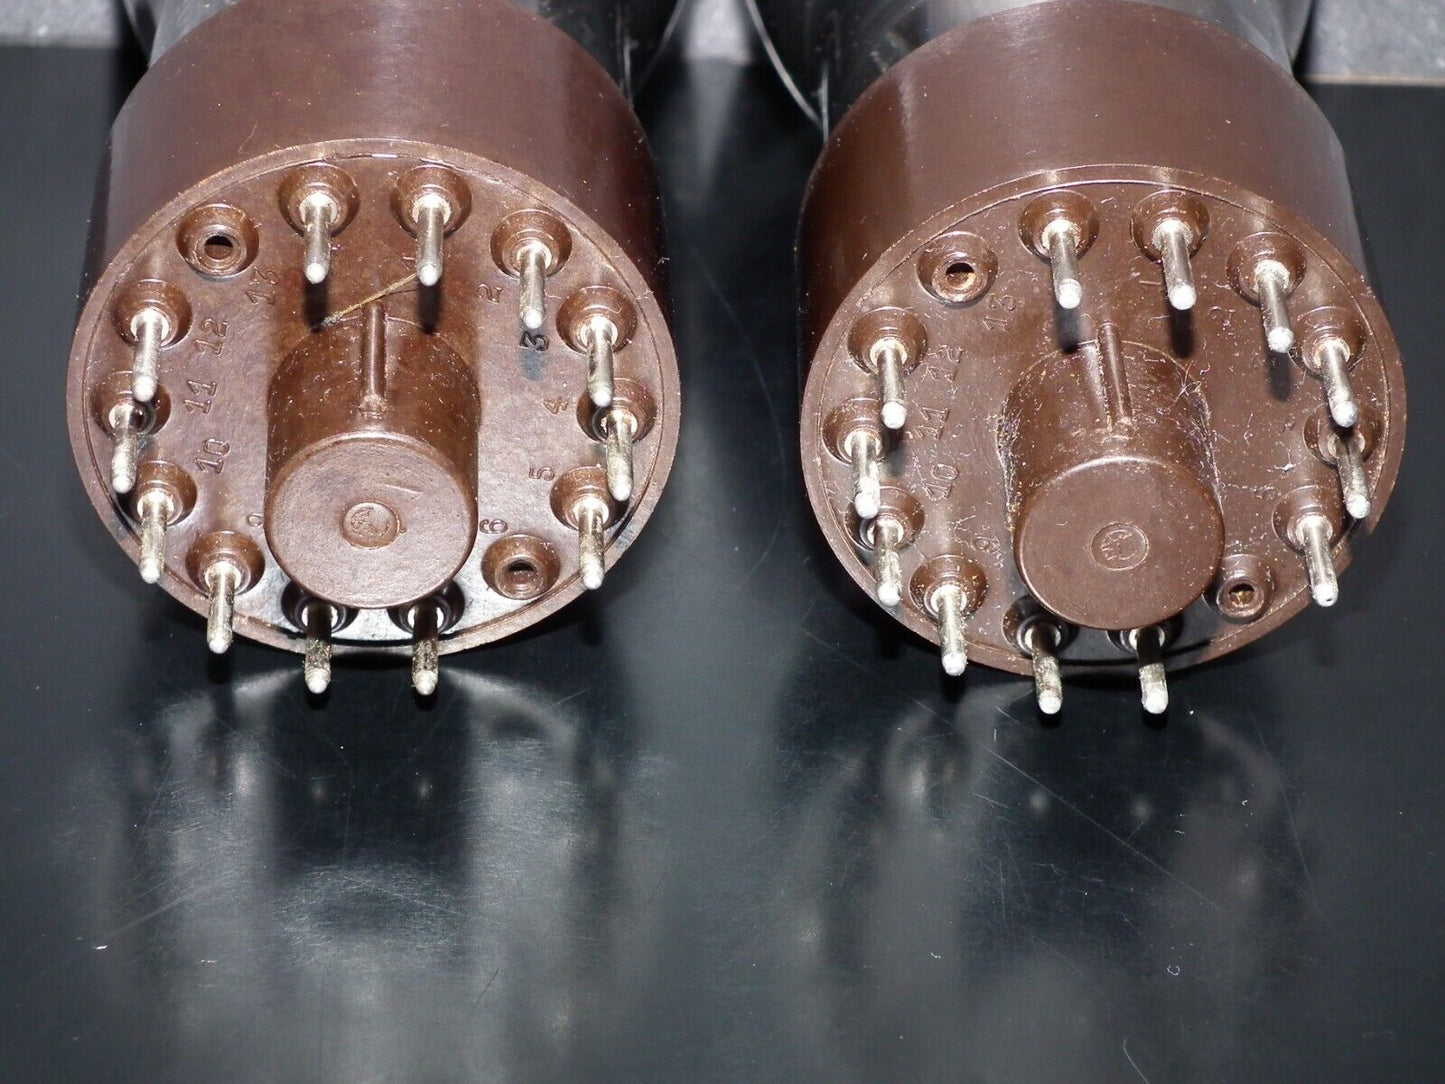 DG7-12C Telefunken Cathode Ray Tube NOS CRT Valve 3"